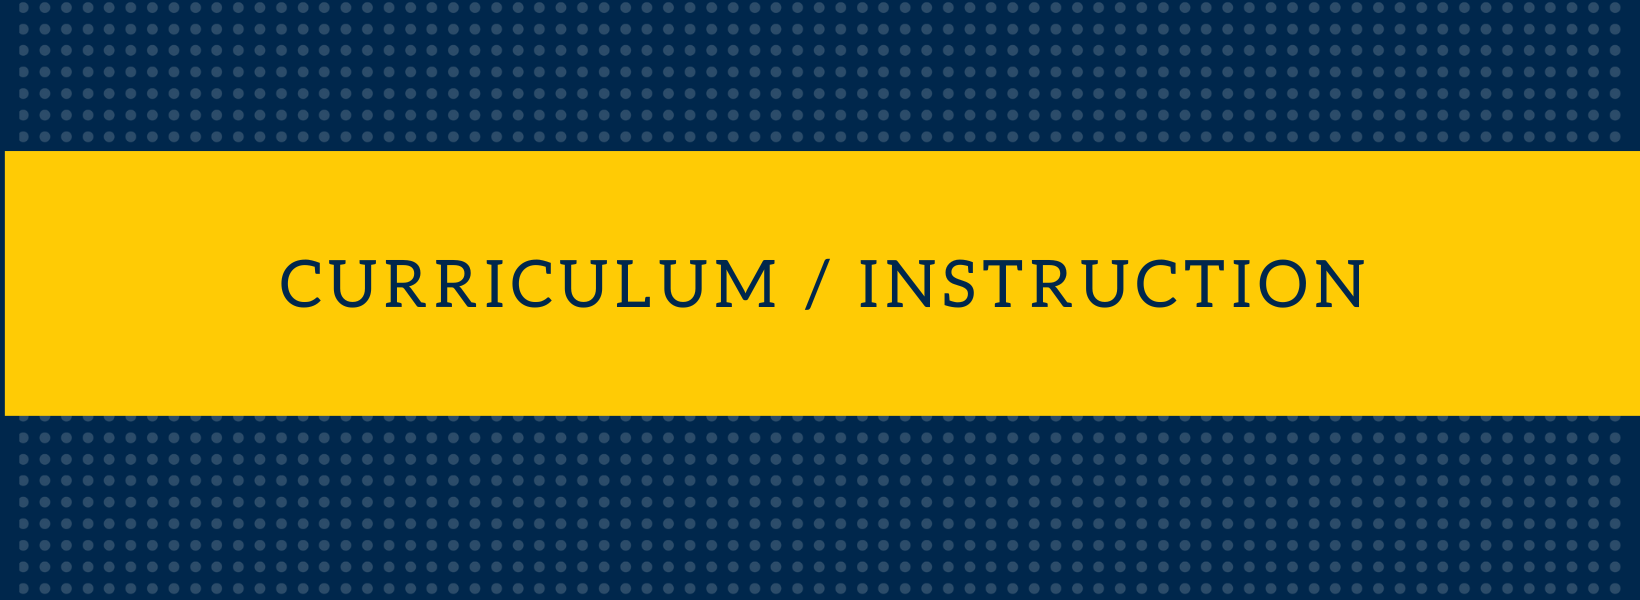 Curriculum / Instruction